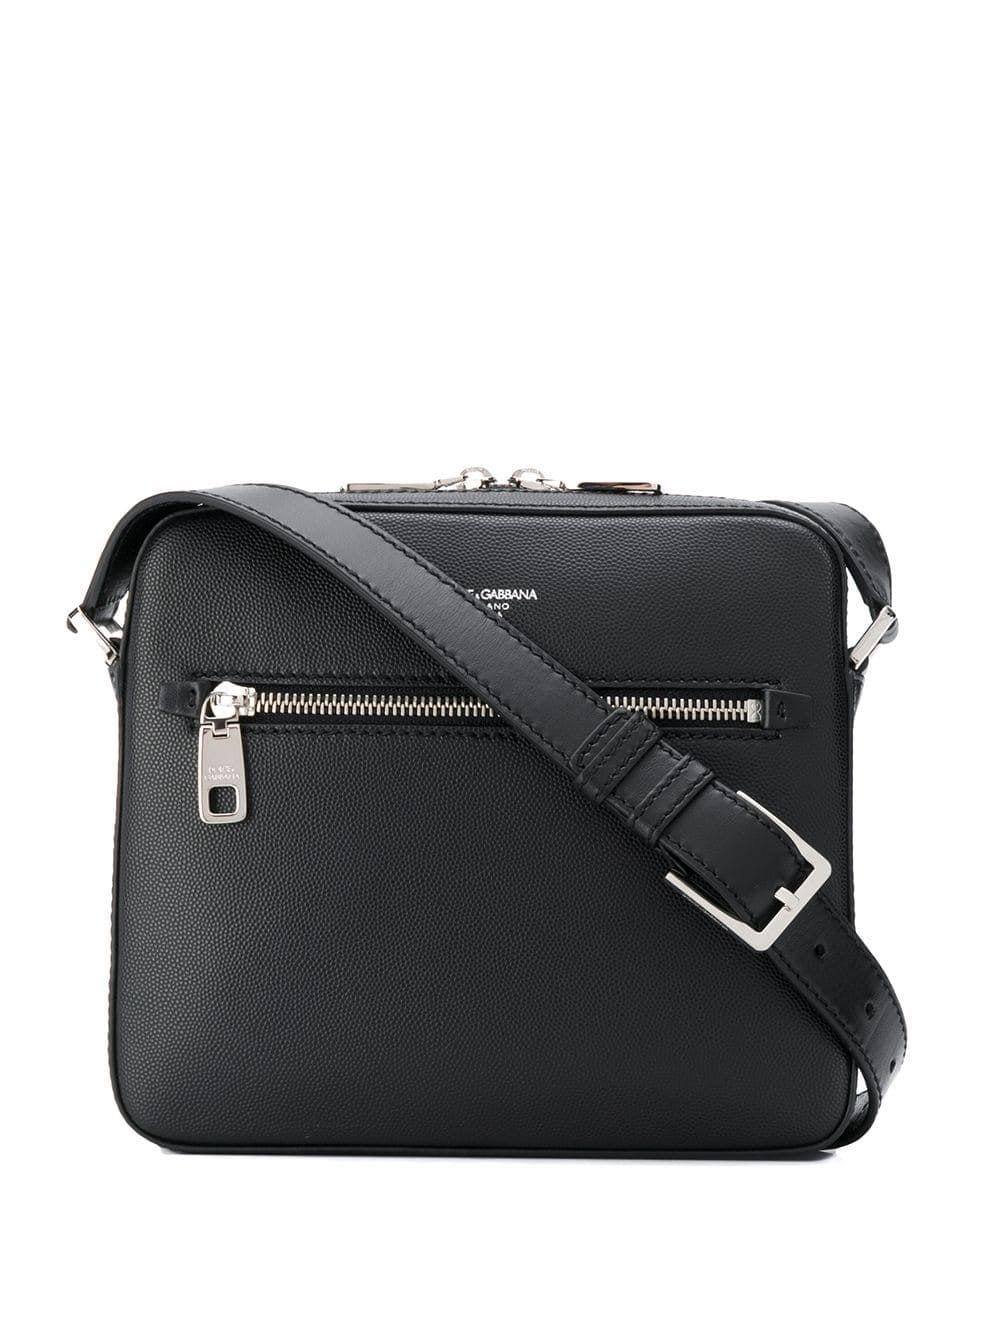 Dolce & Gabbana Leather Shoulder Bag in Black for Men - Lyst